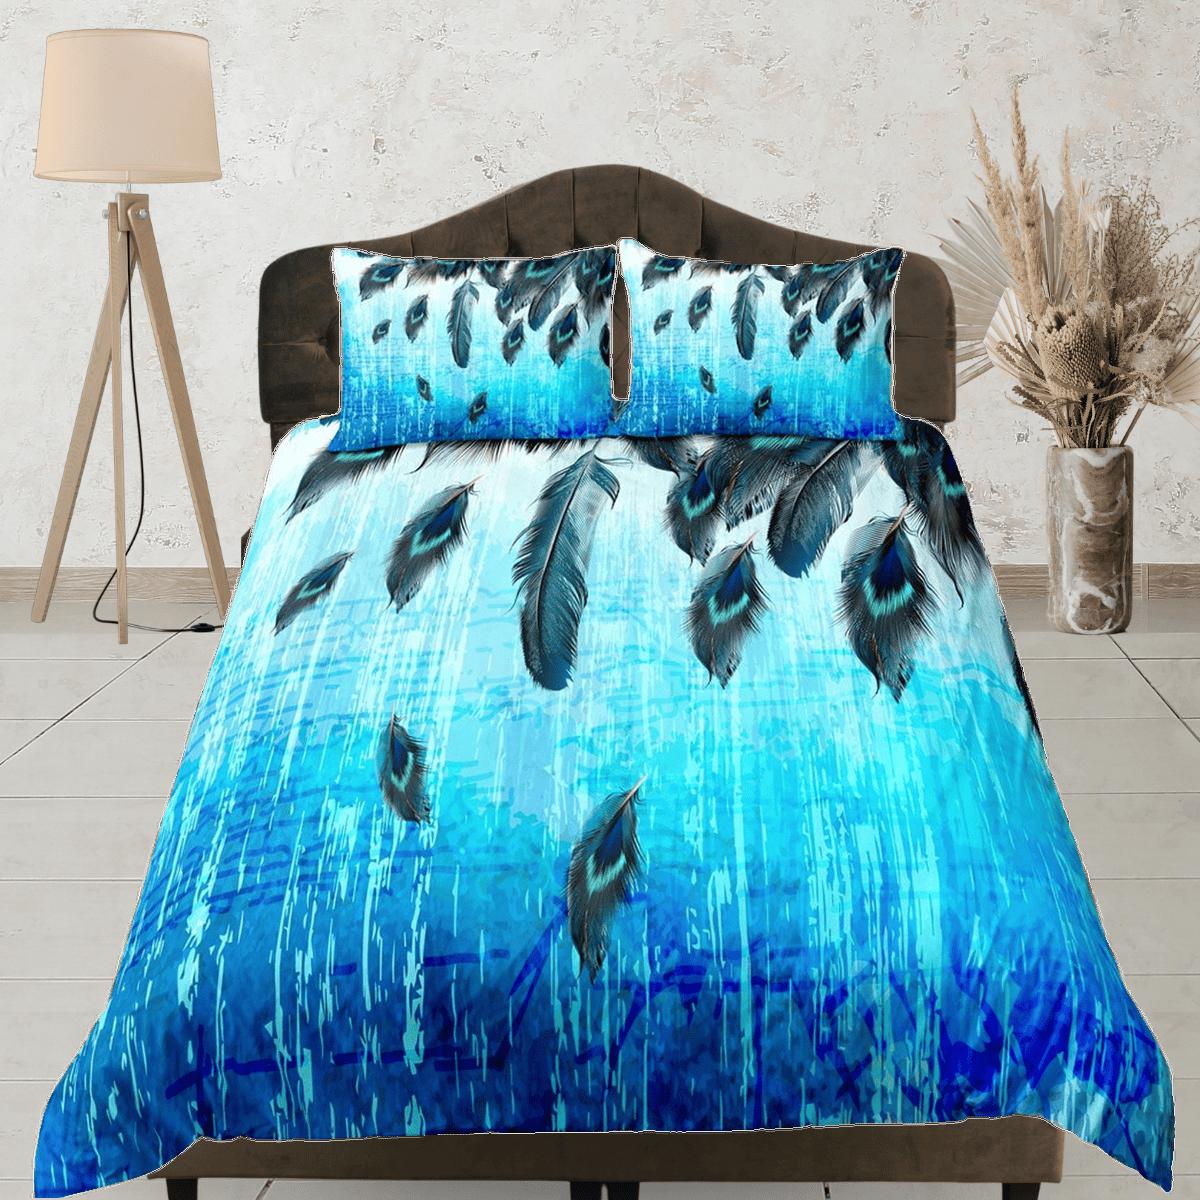 daintyduvet Peacock feathers decor aesthetic bedding set full, luxury duvet cover queen, king, boho duvet, designer bedding, maximalist blue bedspread